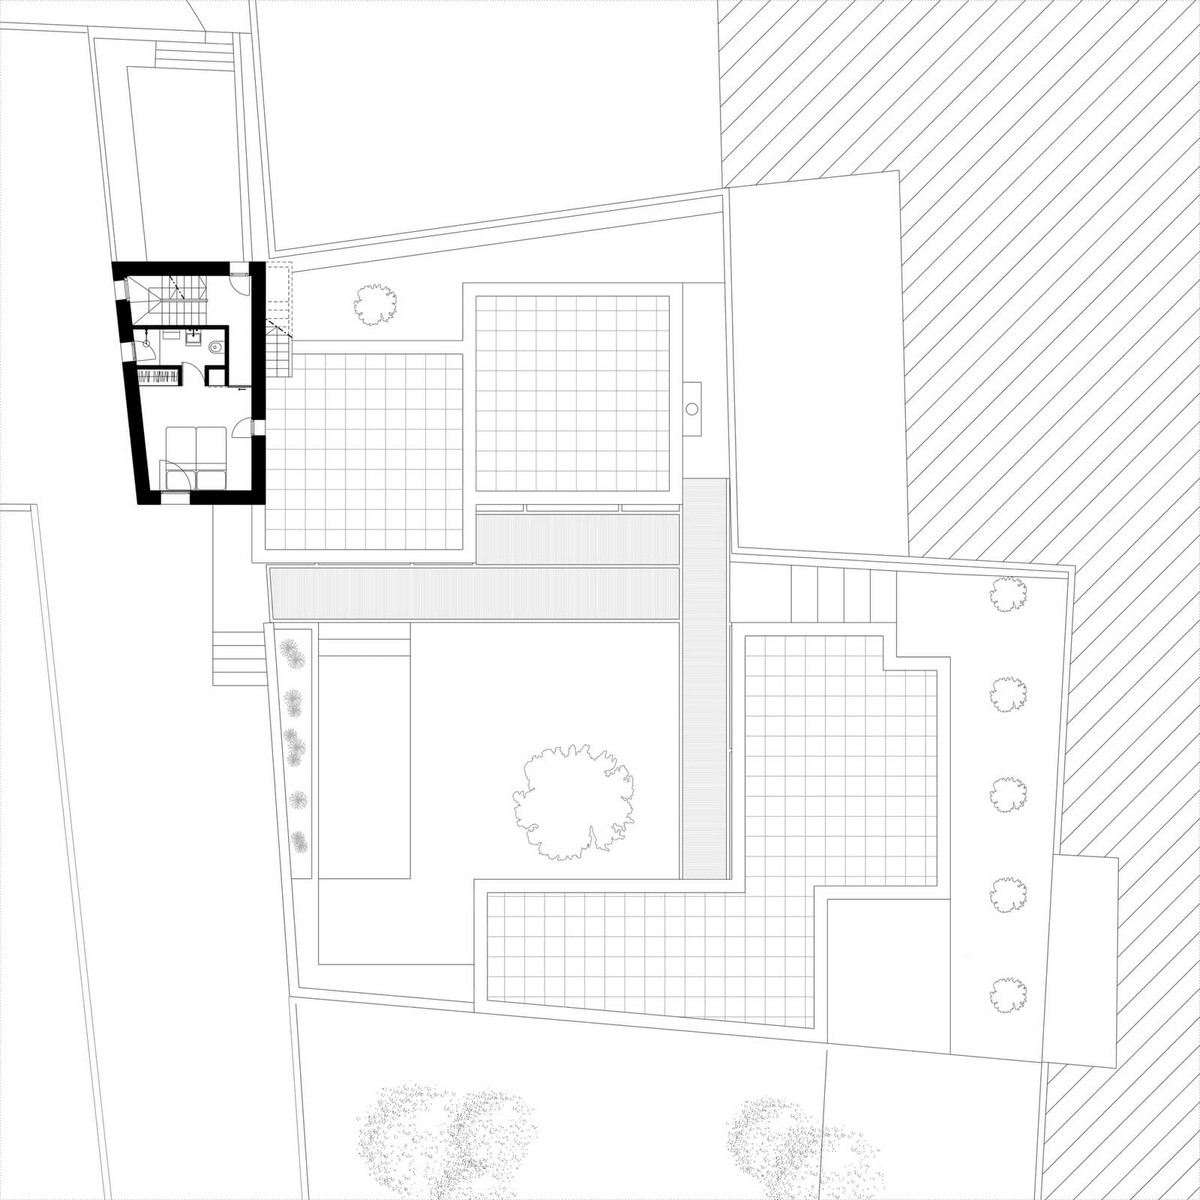 Дом архитектора в Италии открываются, внутренний, башни, Архитектор, вокруг, трёхэтажного, крыше, пространствоНа, внешнее, единое, разрозненные, объединяет, двора, внутреннего, предусмотрен, спроектирована, бамбука, железа, белого, элементовНавес